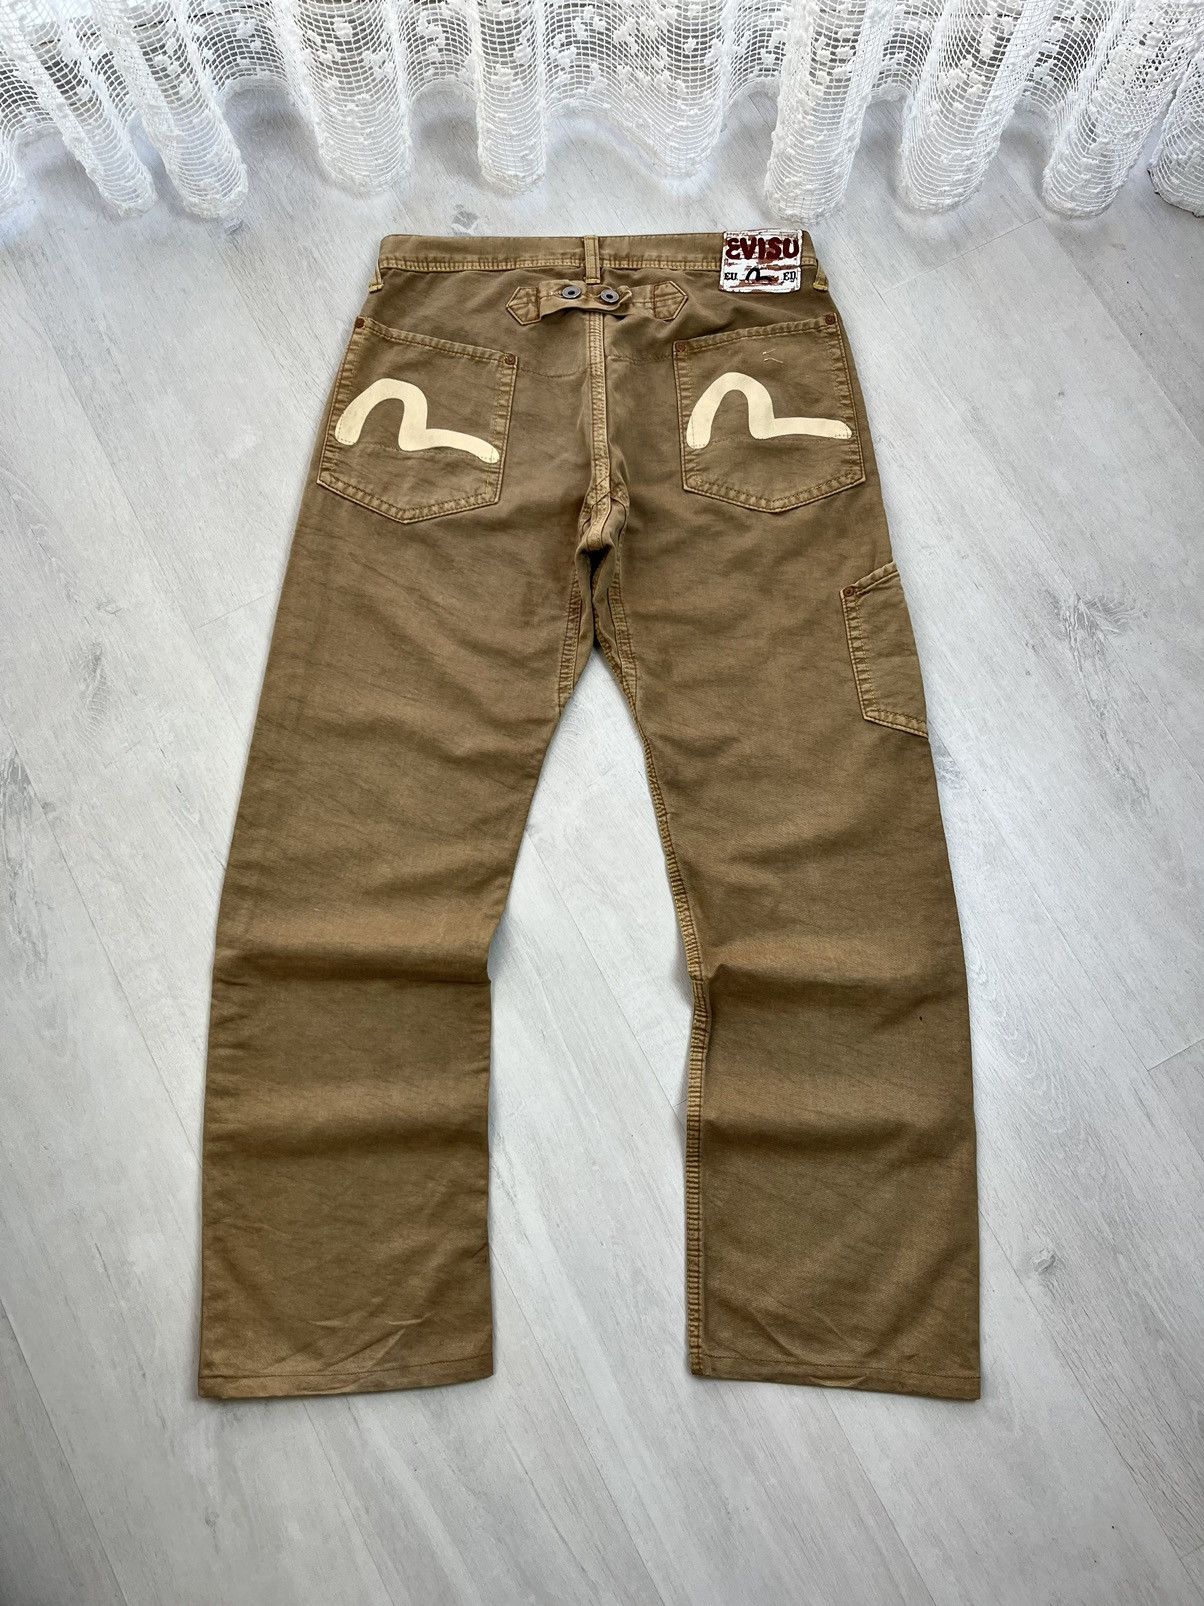 Pre-owned Evisu X Vintage Evisu Jeans Japanese Workwear Pants Y2k 90's In Brown